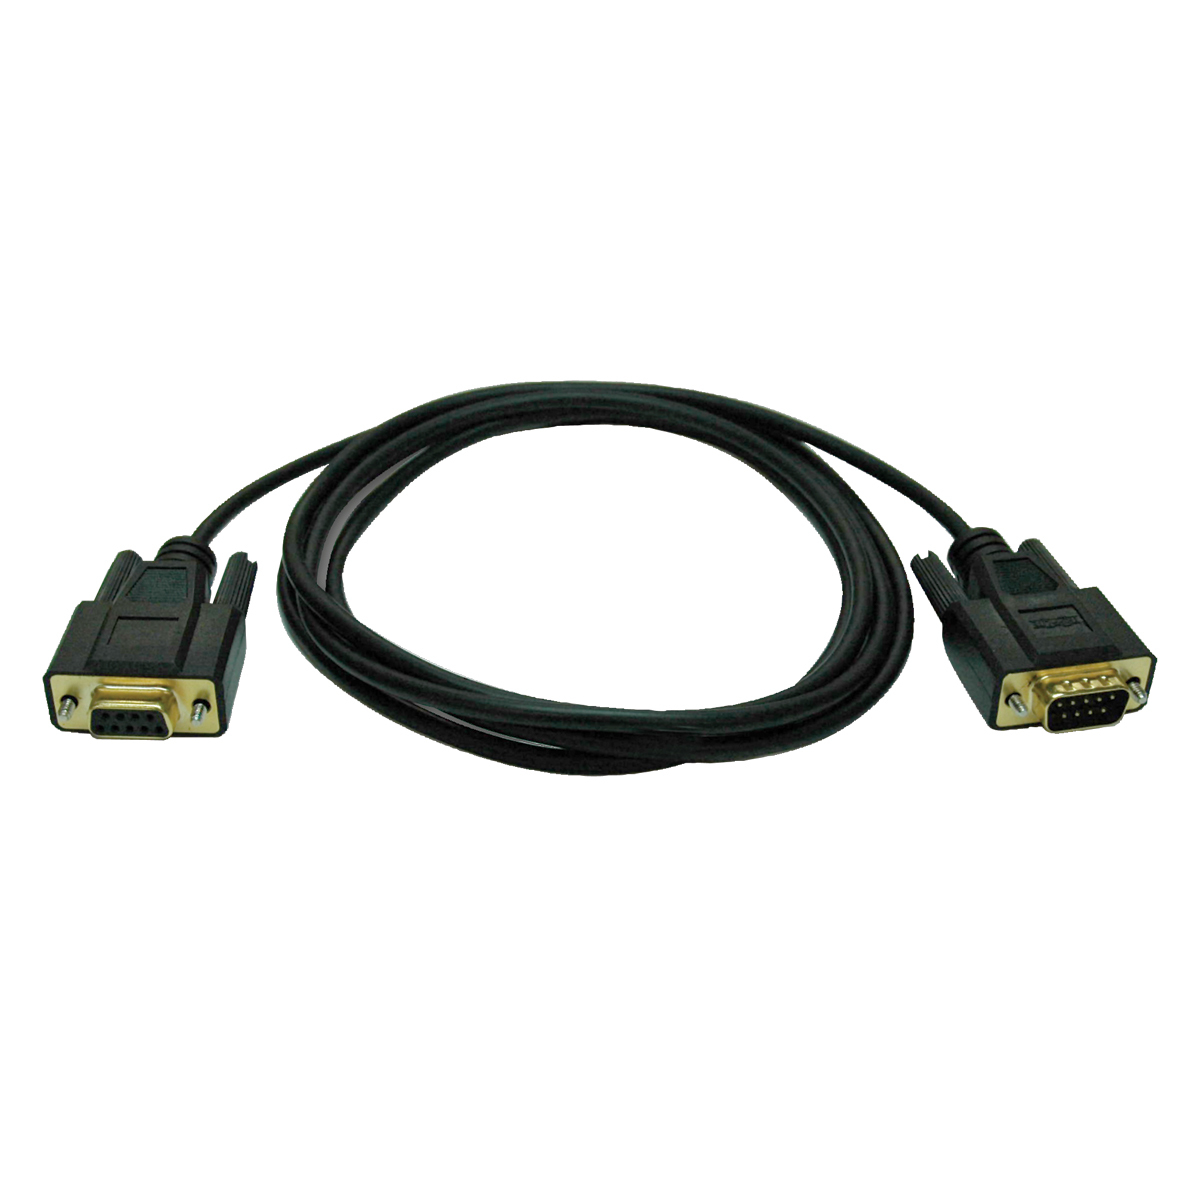 Cable Tripp Lite De Modem Nulo Serial Rs232 P454-006 1.83M Db9 Negro